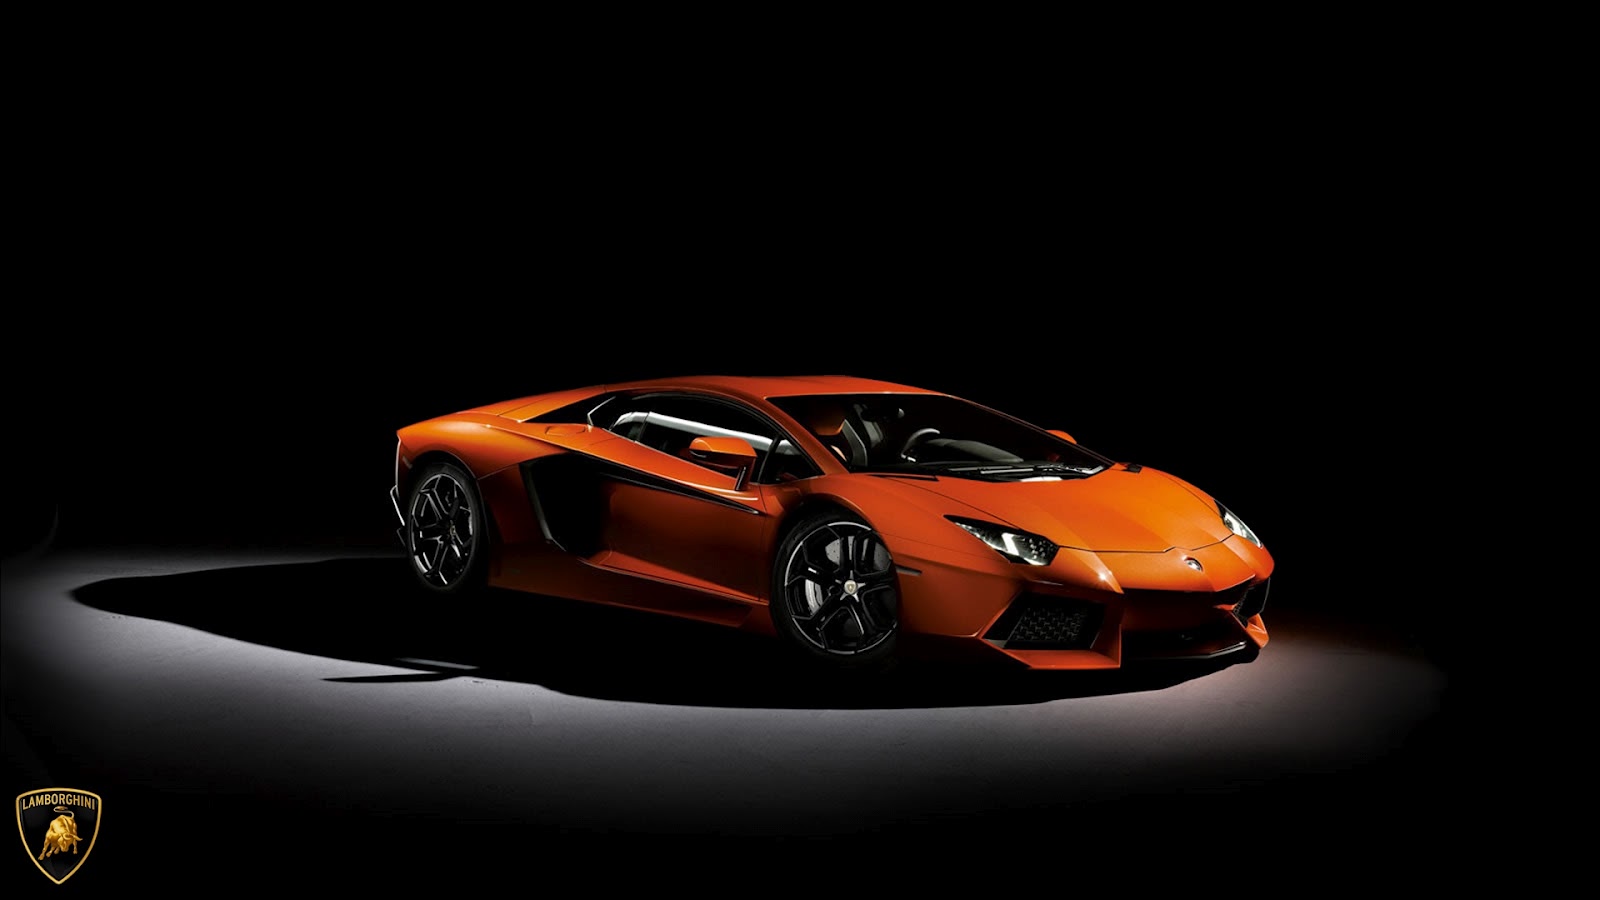 Lamborghini HD Wallpaper 1080p On